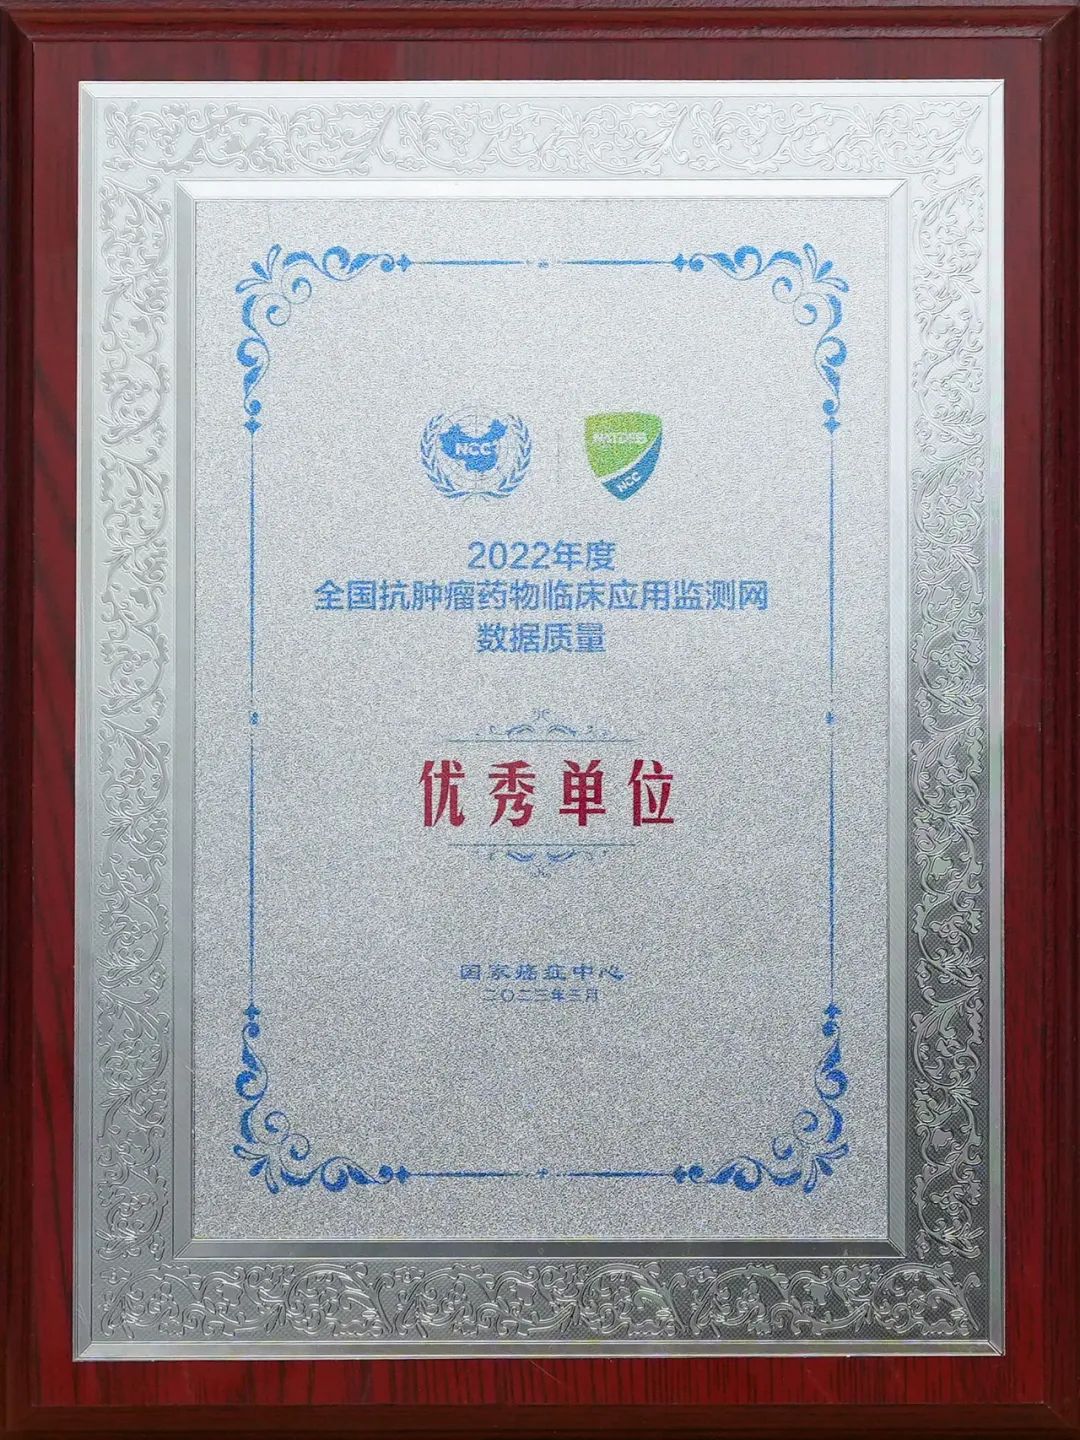 第十届国家癌症中心学术年会召开 河南省癌症防治工作受表彰